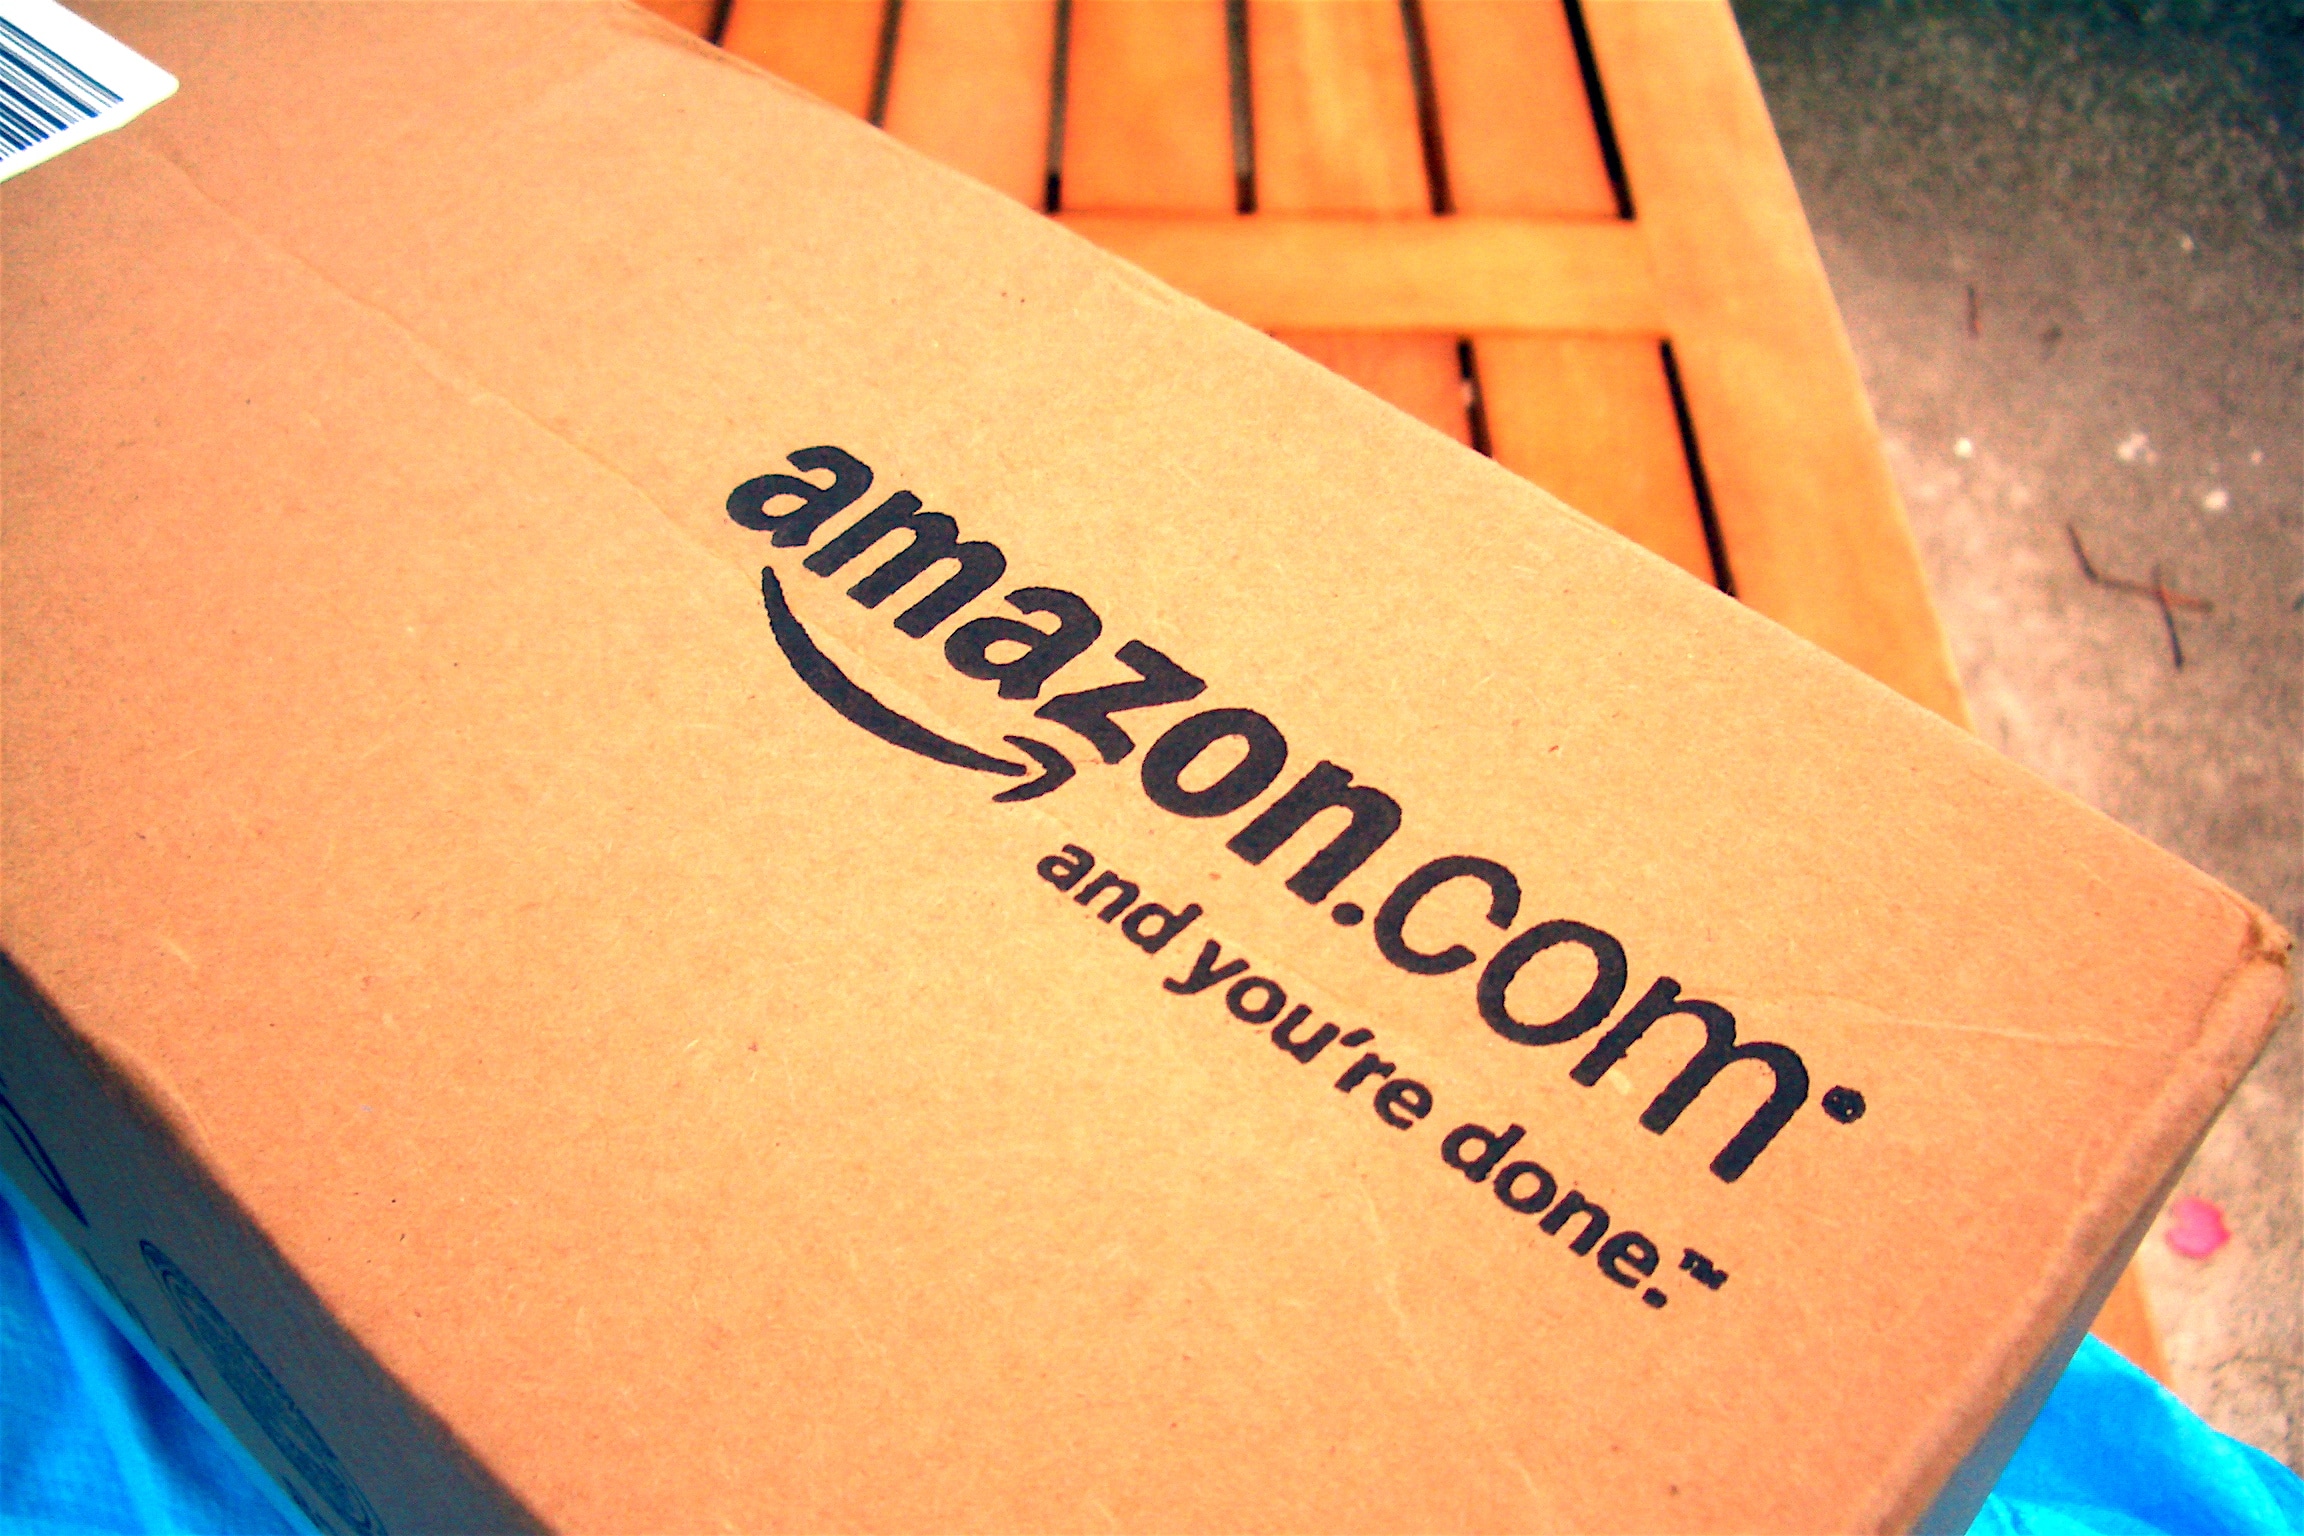 Trouve-t-on vraiment tout sur Amazon ?